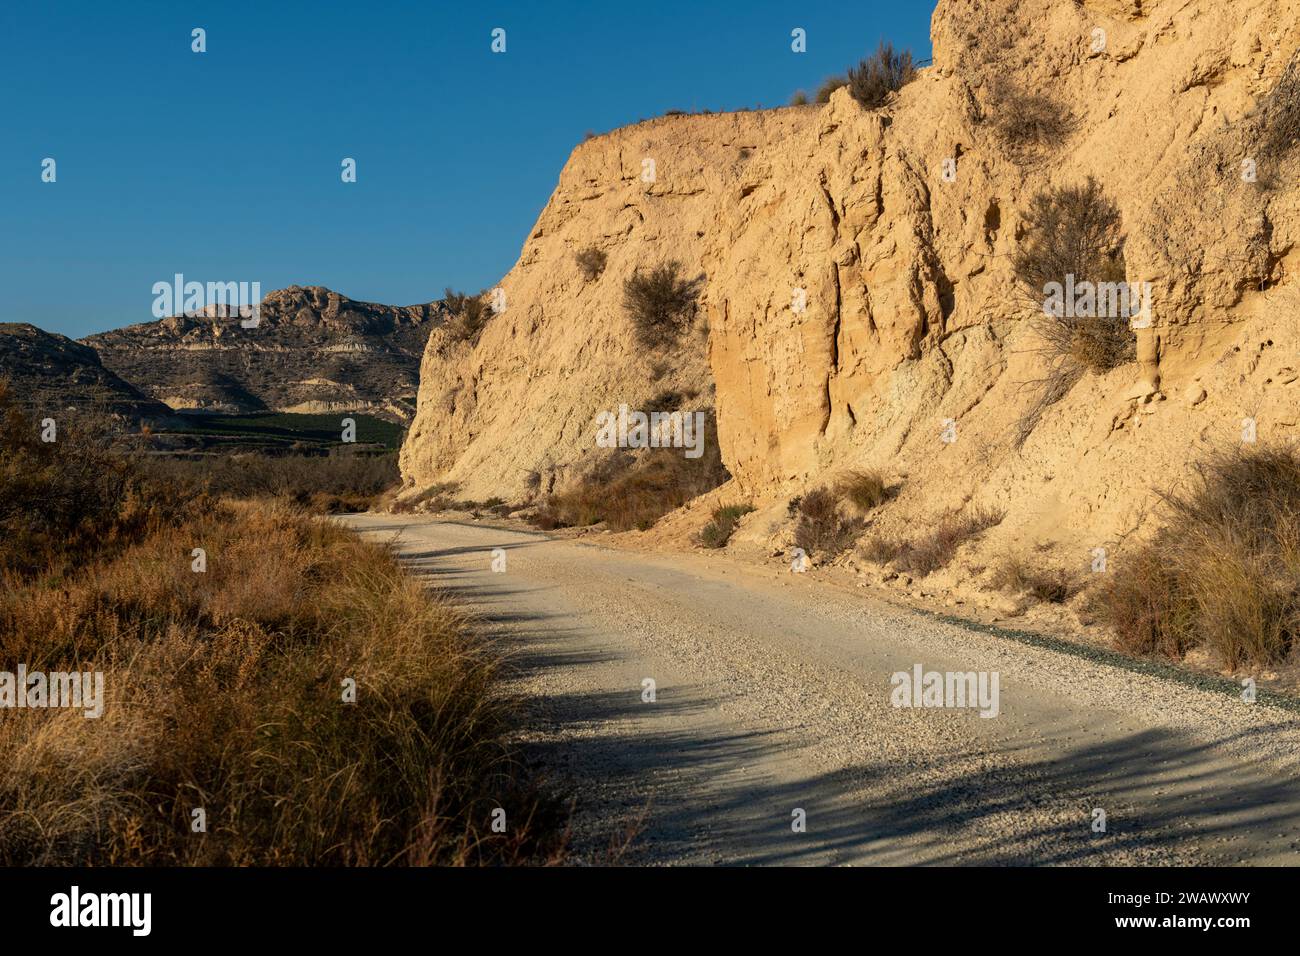 Strada sterrata in un arido paesaggio desertico con scogliere lontane e luce del sole mattutino, Elche, provincia di Alicante, Spagna - foto di scorta Foto Stock